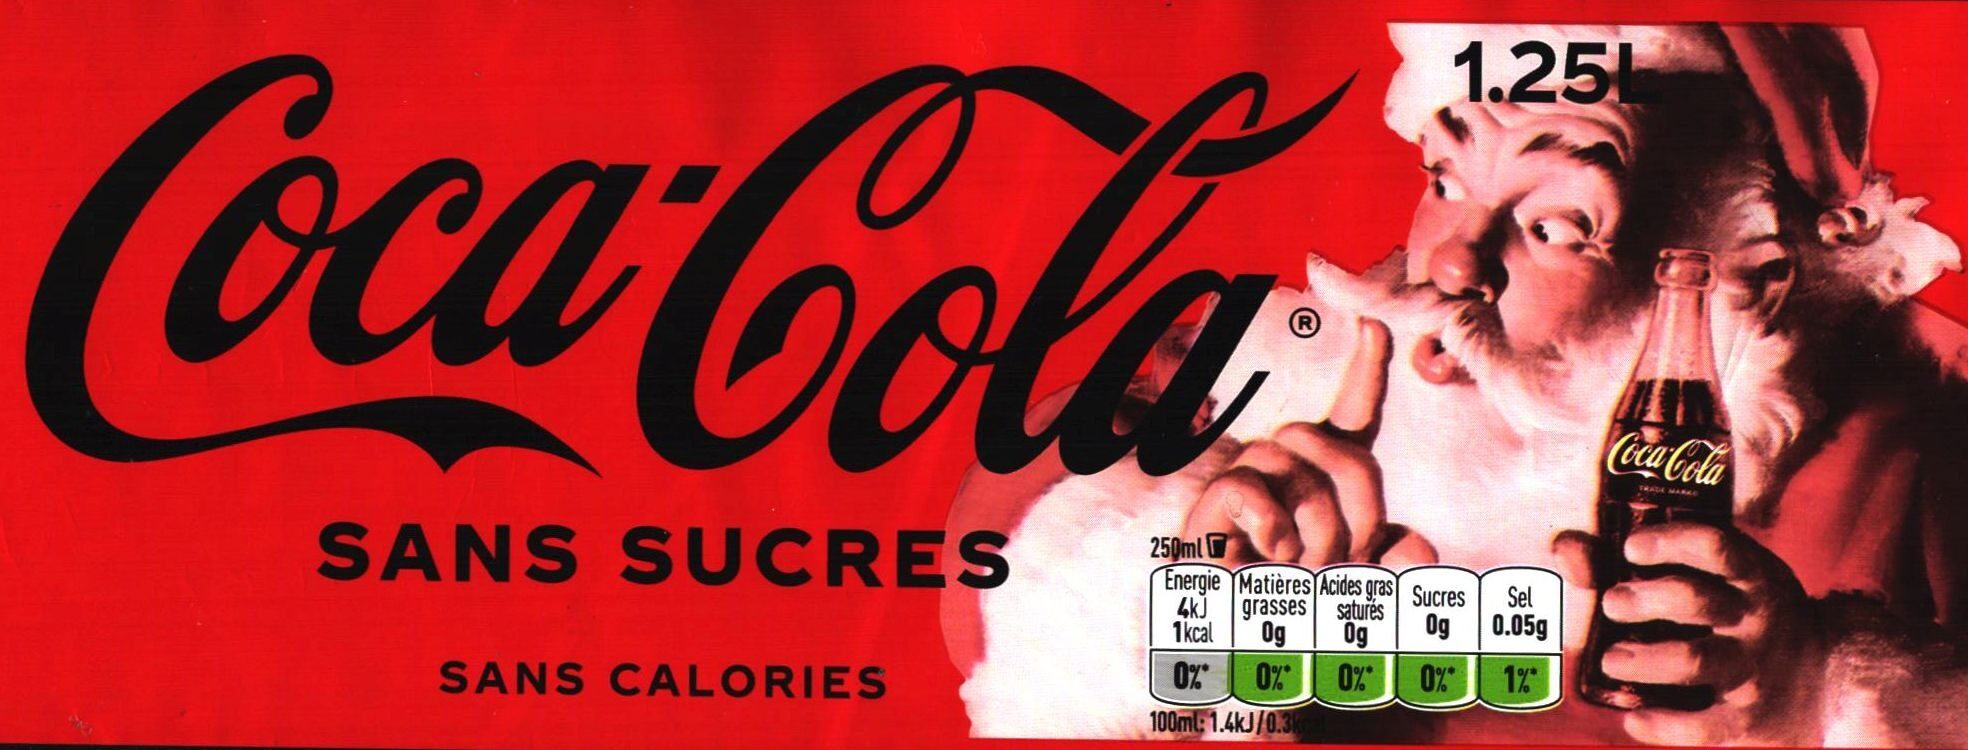 Coca-Cola® Sans sucres Sans colorants - Product - fr